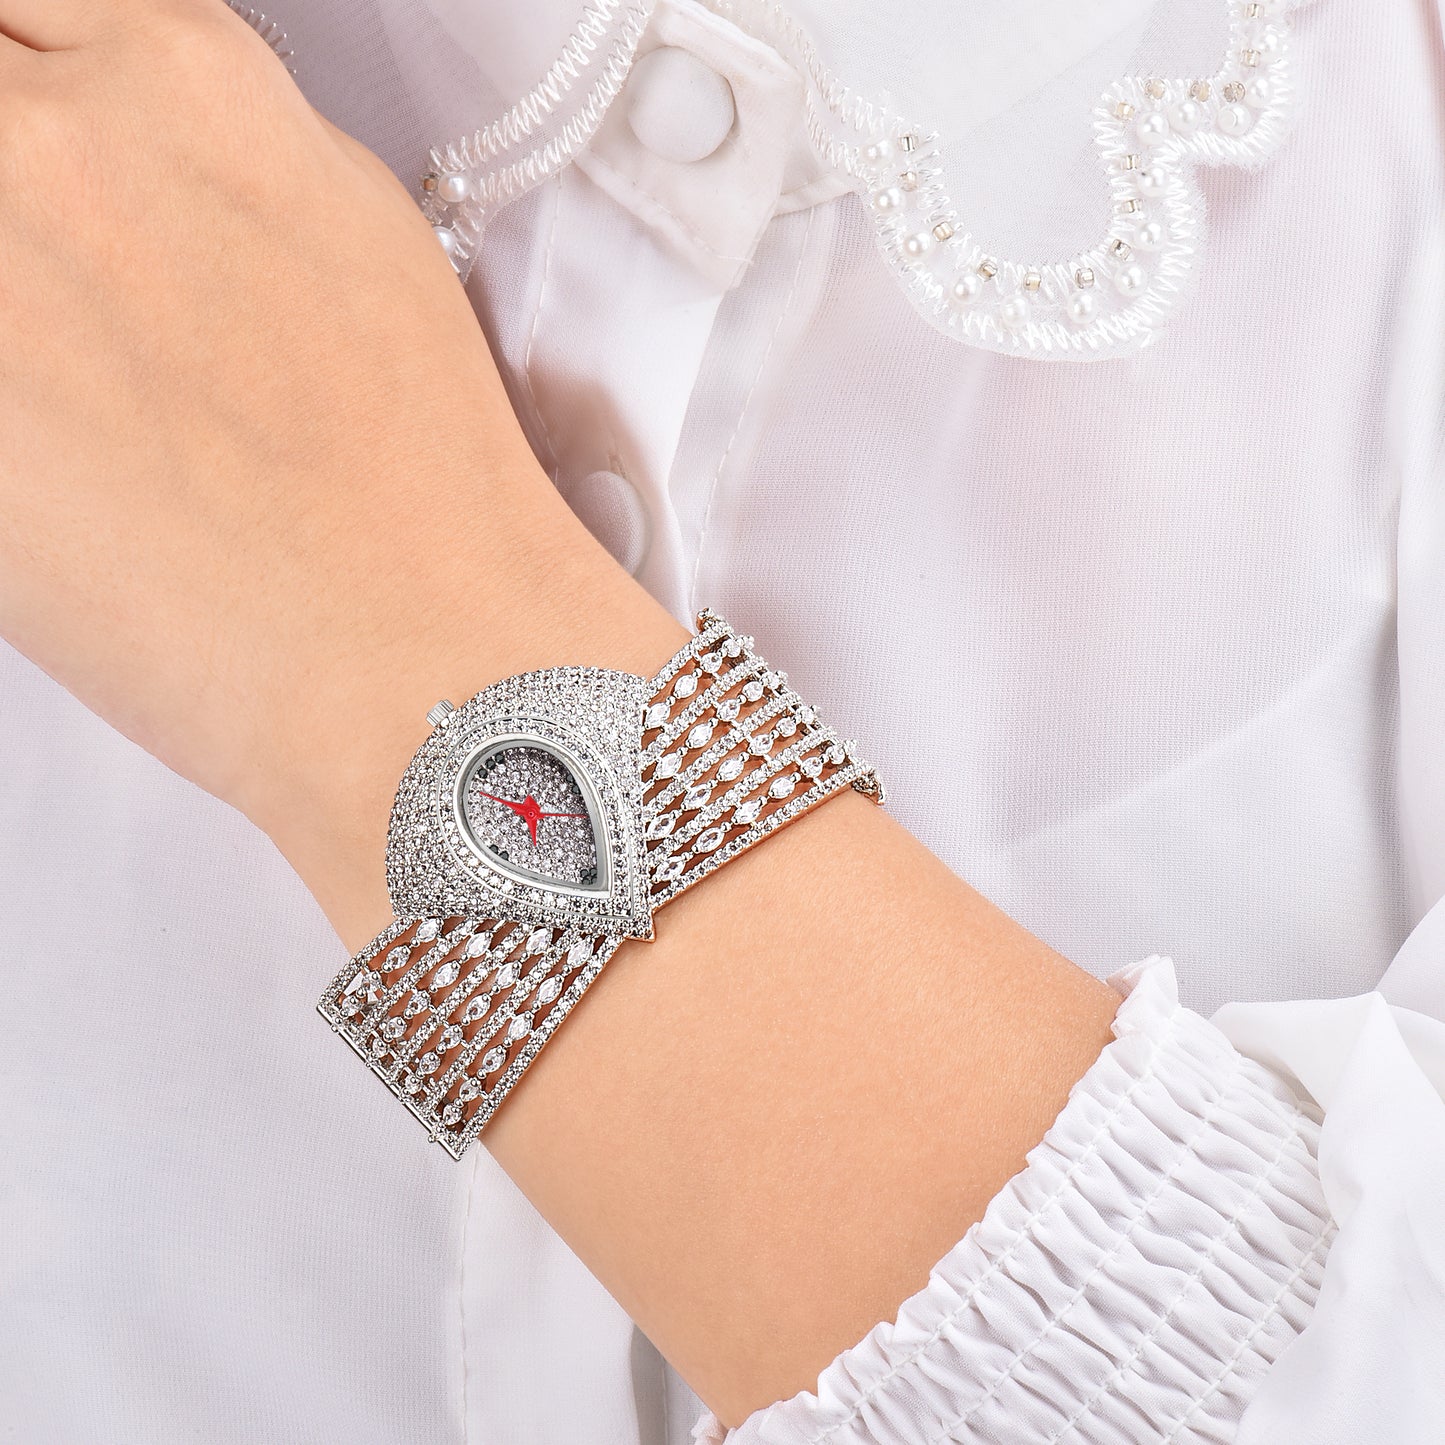 Grandeur  Handcrafted CZ Women's Watch